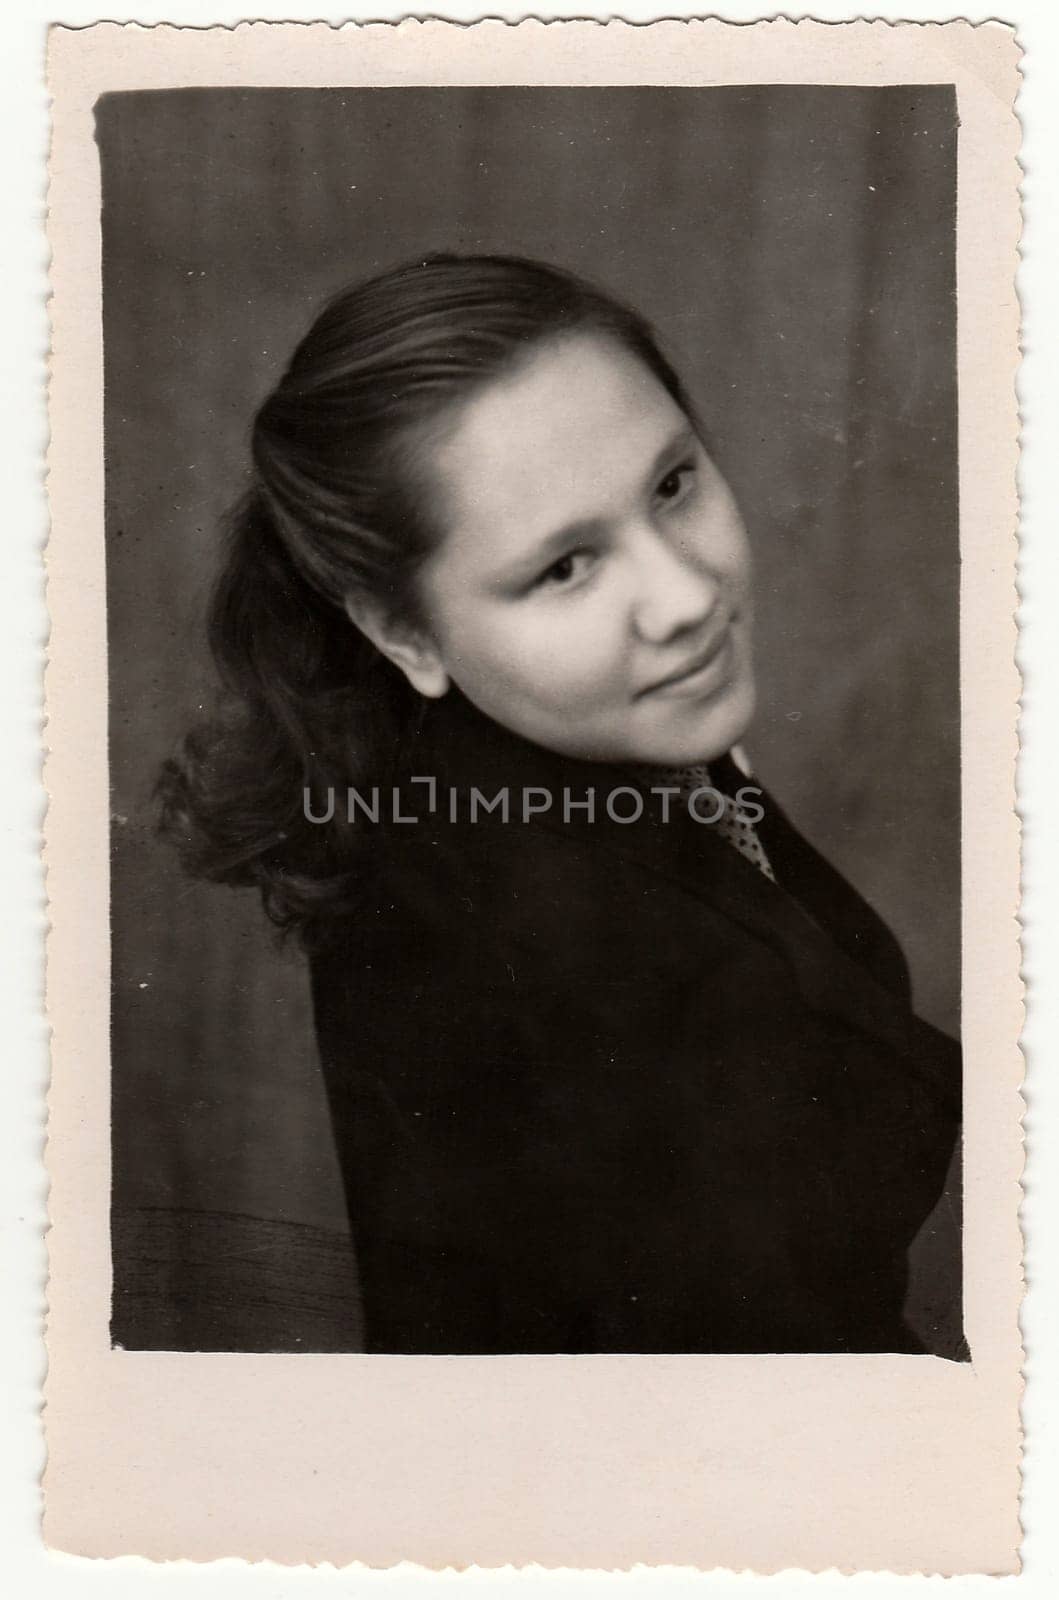 USSR - CIRCA 1960s: Vintage portrait shows a young woman. Black & white antique photo.